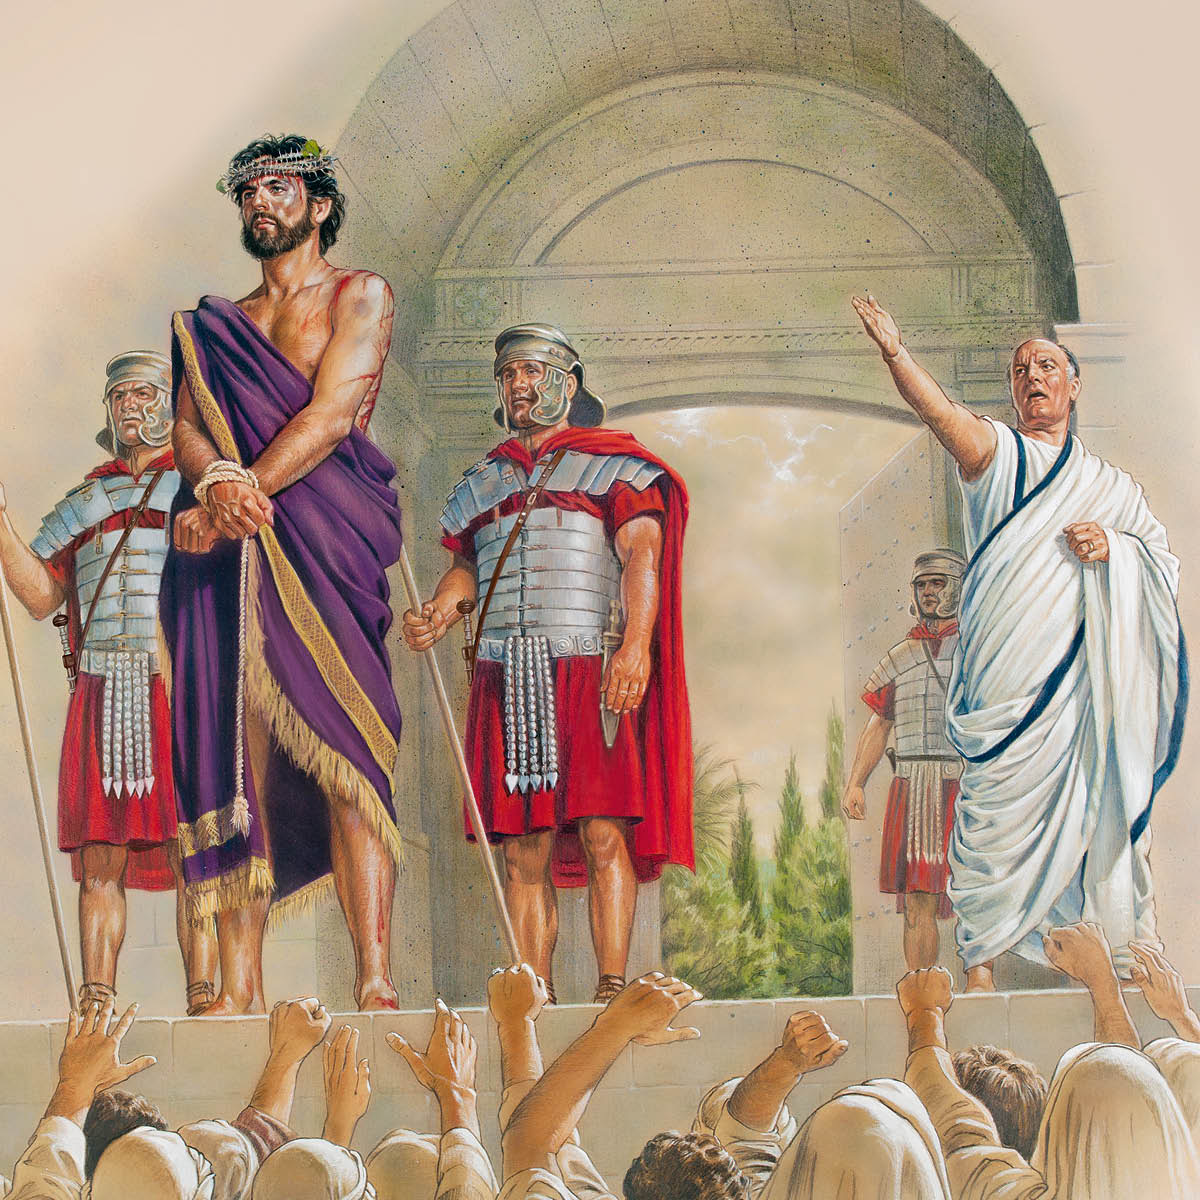 Pilatus præsenterer Jesus, der er klædt i en purpurkappe og har en tornekrans på hovedet, for en vred folkemængde.